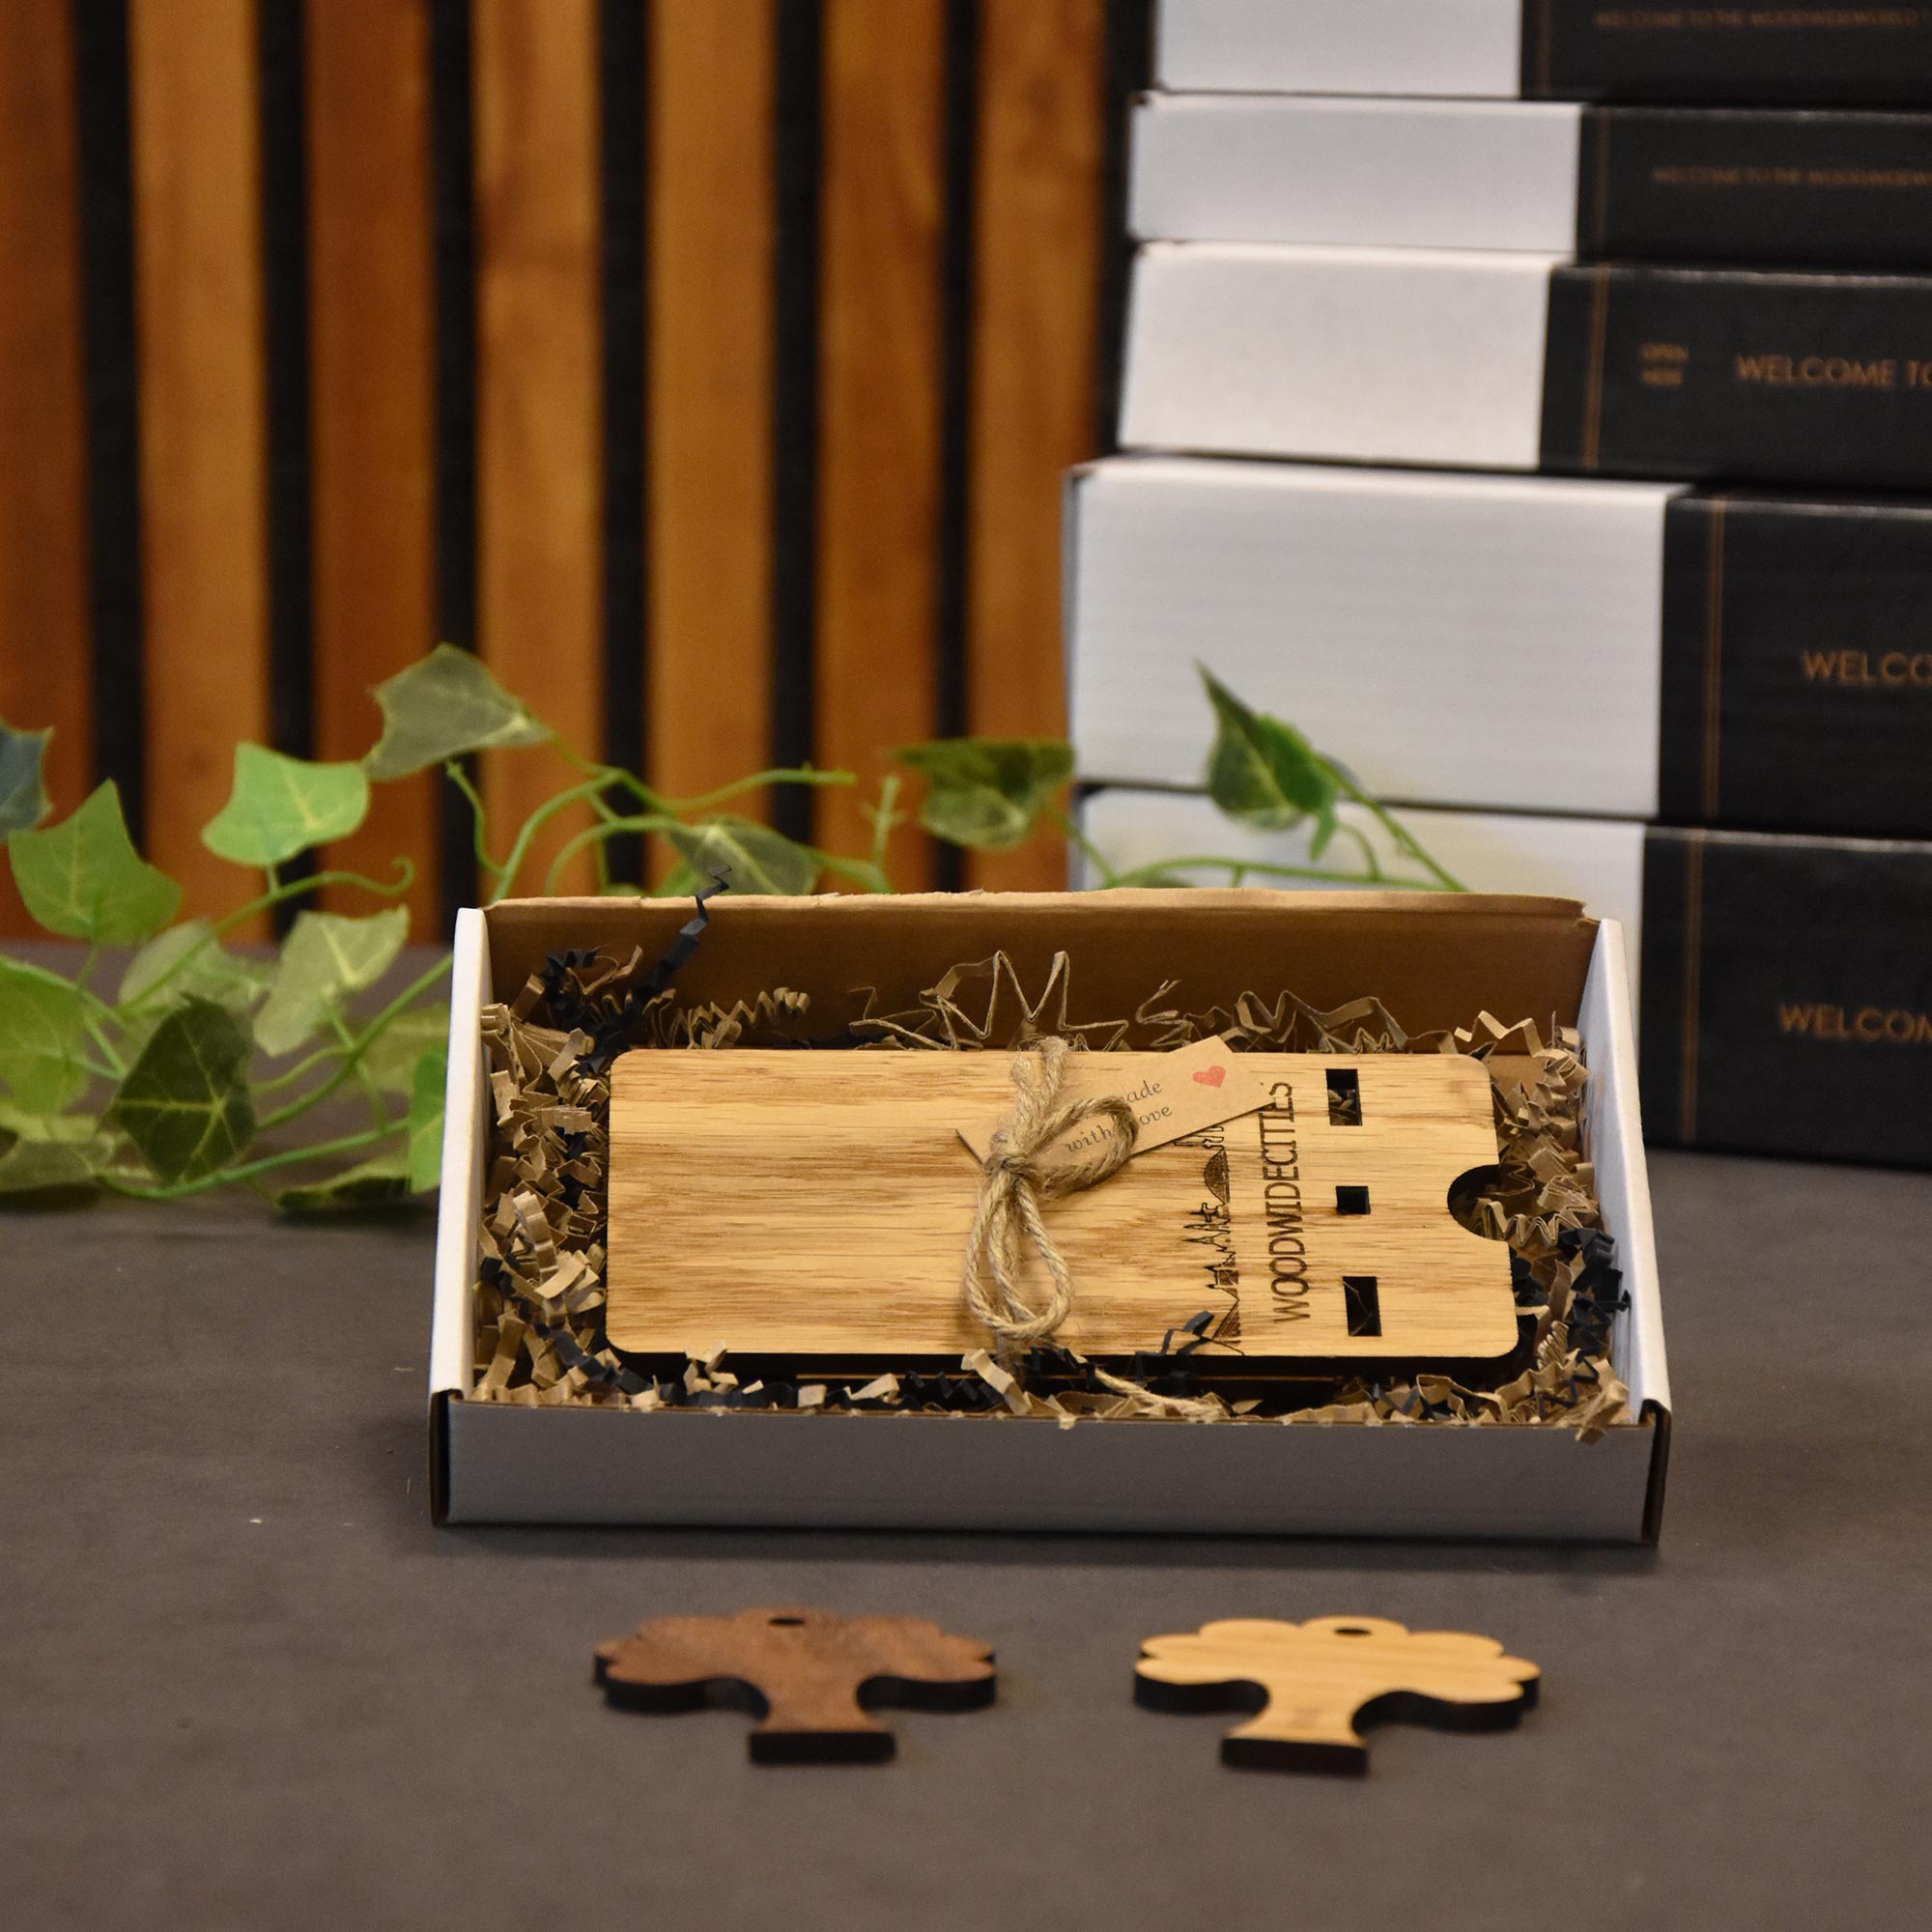 Skyline Telefoonhouder Valkenswaard houten cadeau decoratie relatiegeschenk van WoodWideCities